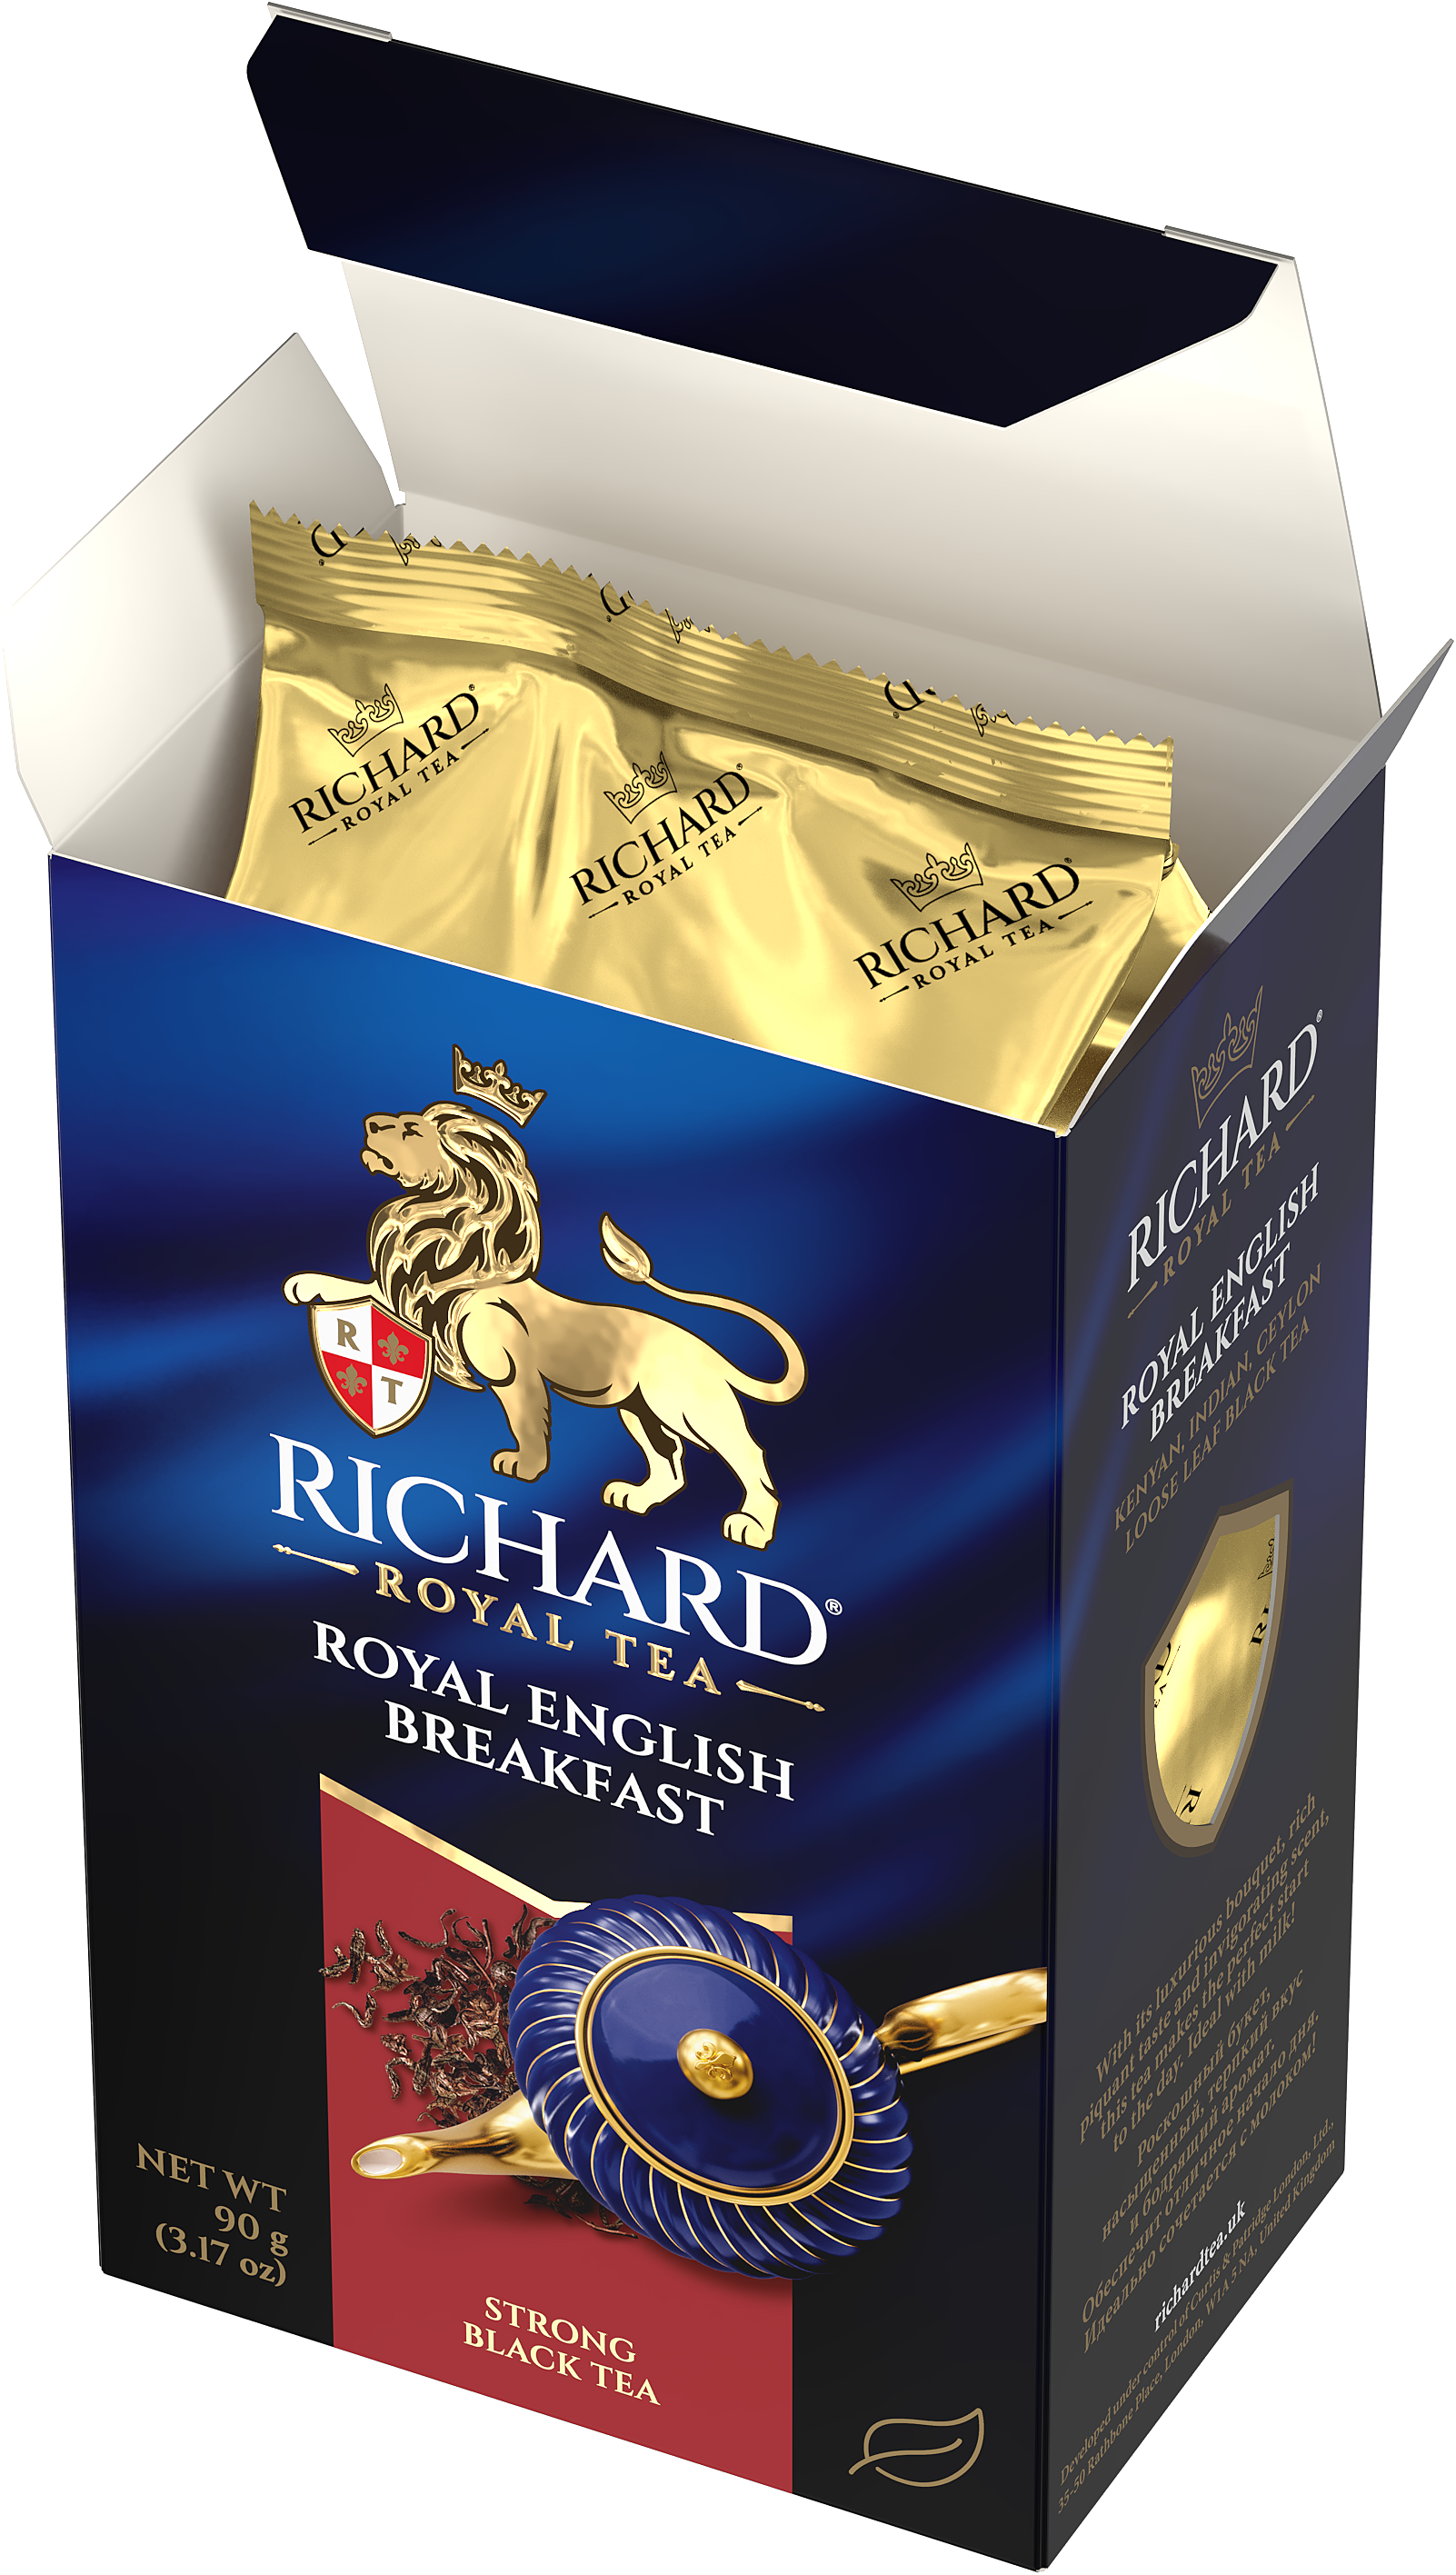 Richard "Royal English Breakfast", black leaf tea, 90 g Richard Tea